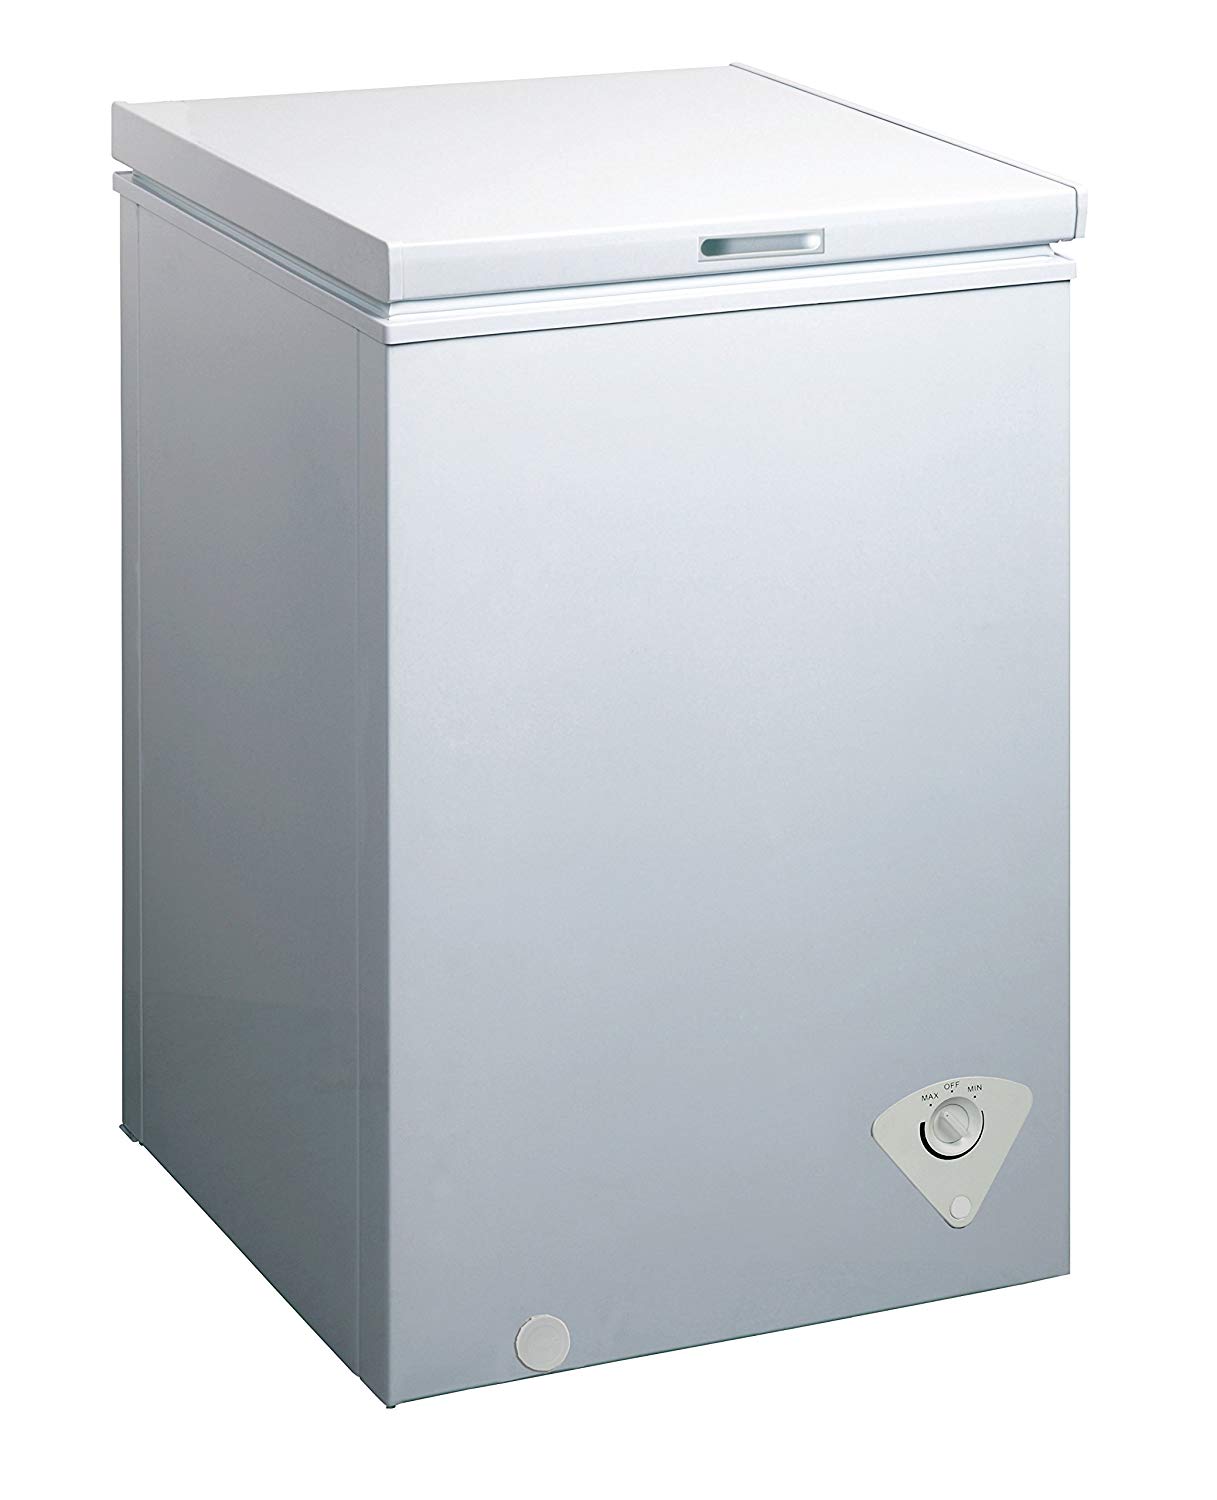 MIDEA WHS-129C1 Single Door Chest Freezer